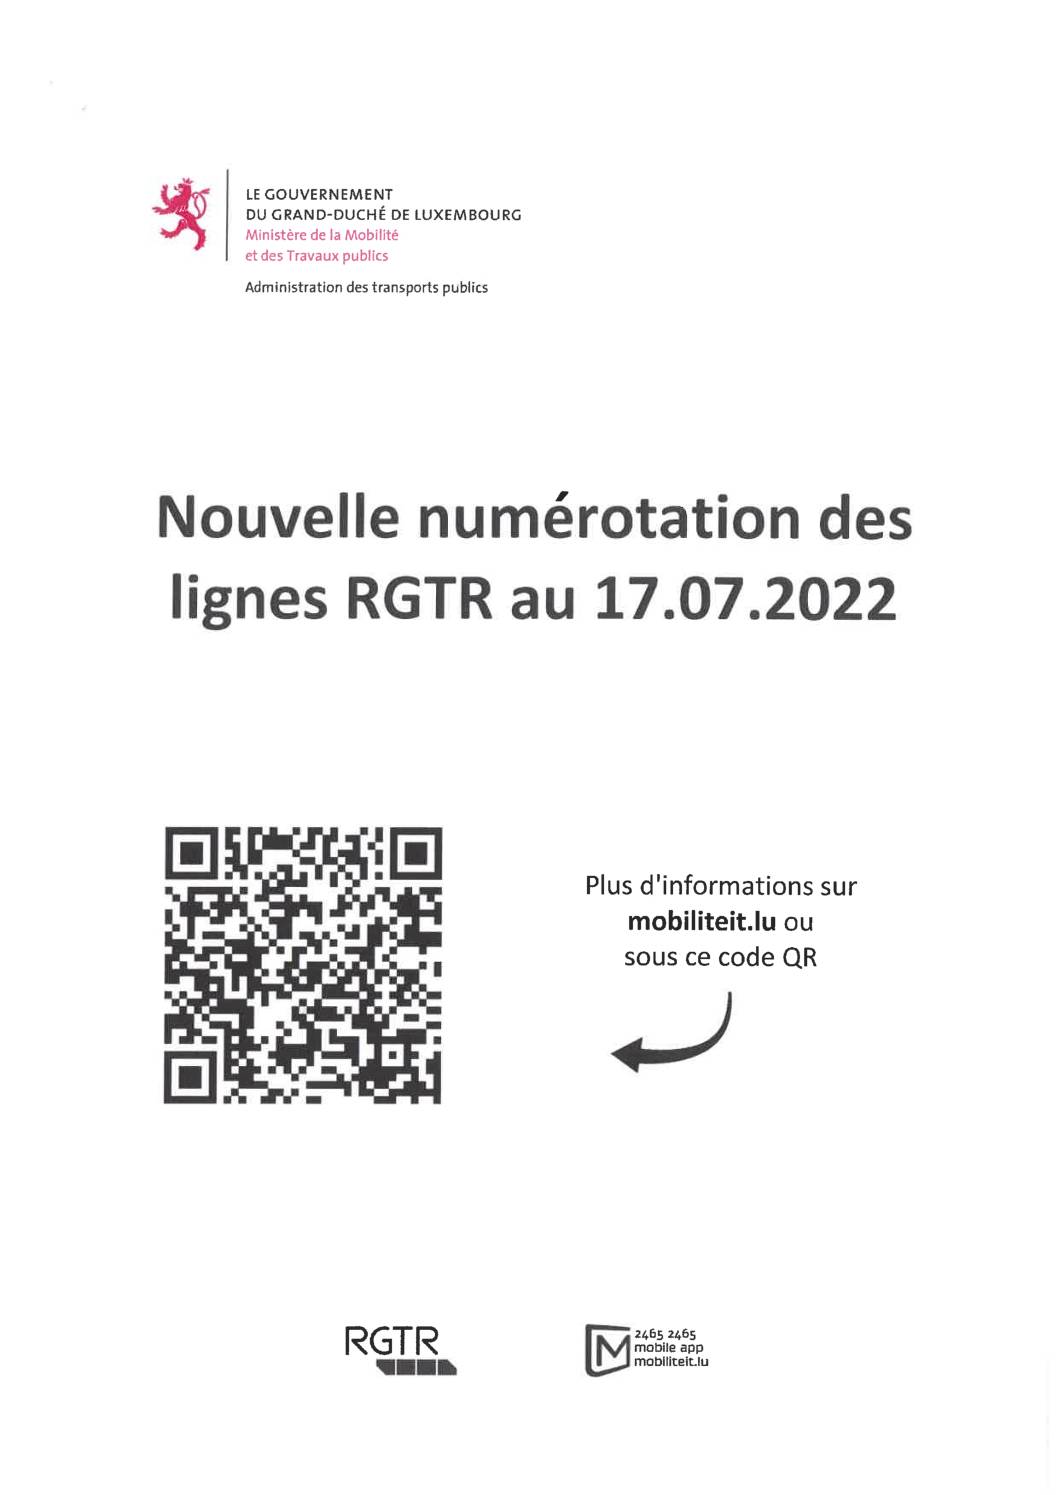 Nouvelle numérotation des lignes RGTR au 17 juillet 2022